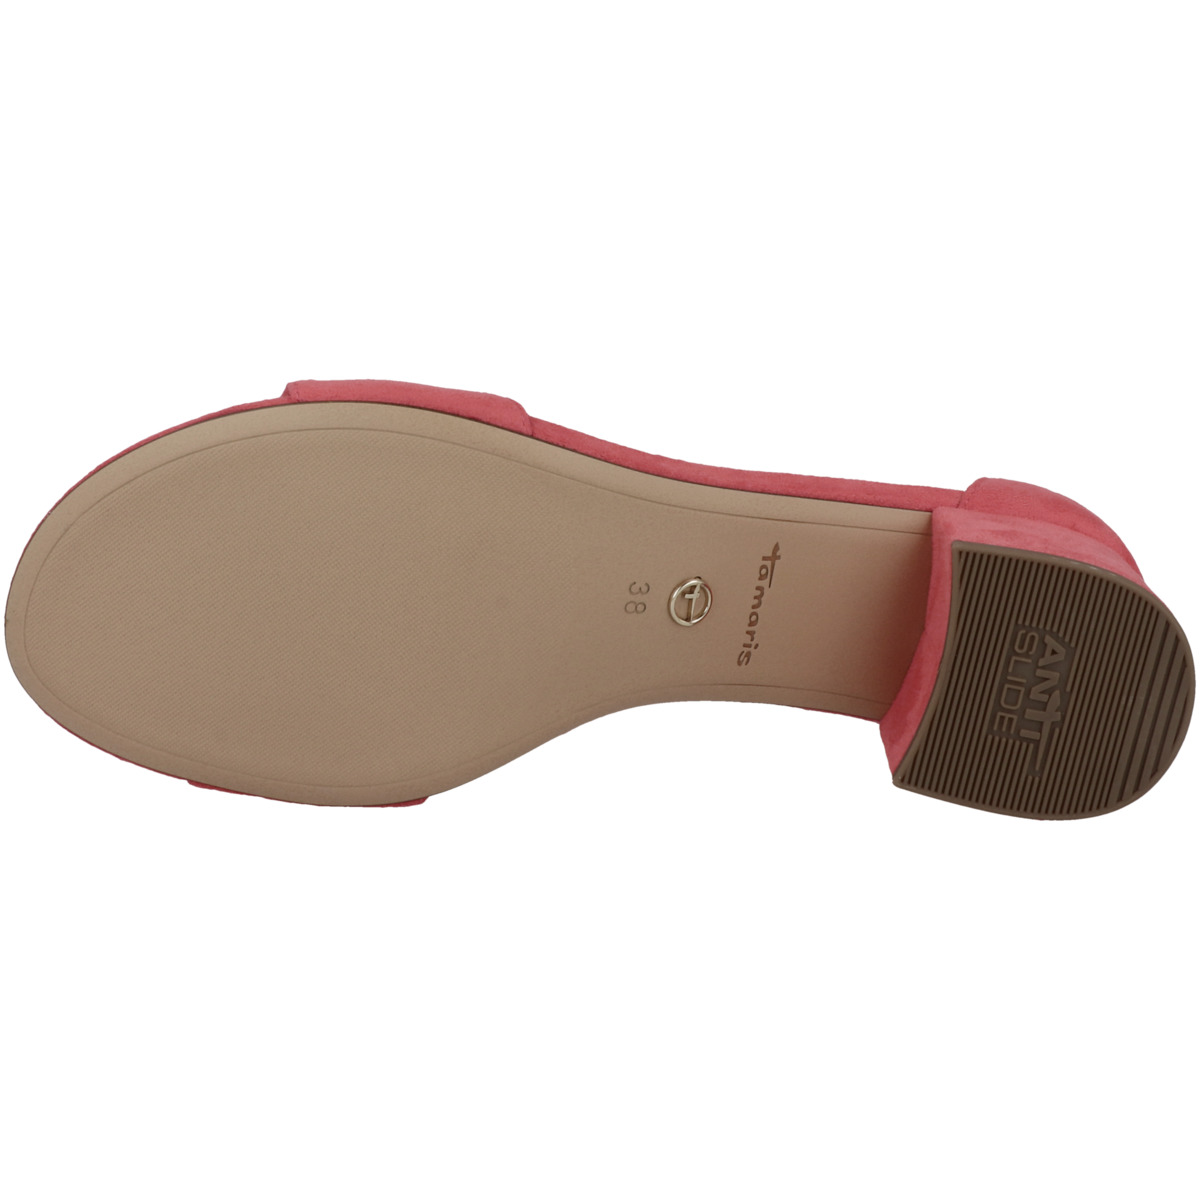 Tamaris 1-28201-20 Sandalette pink